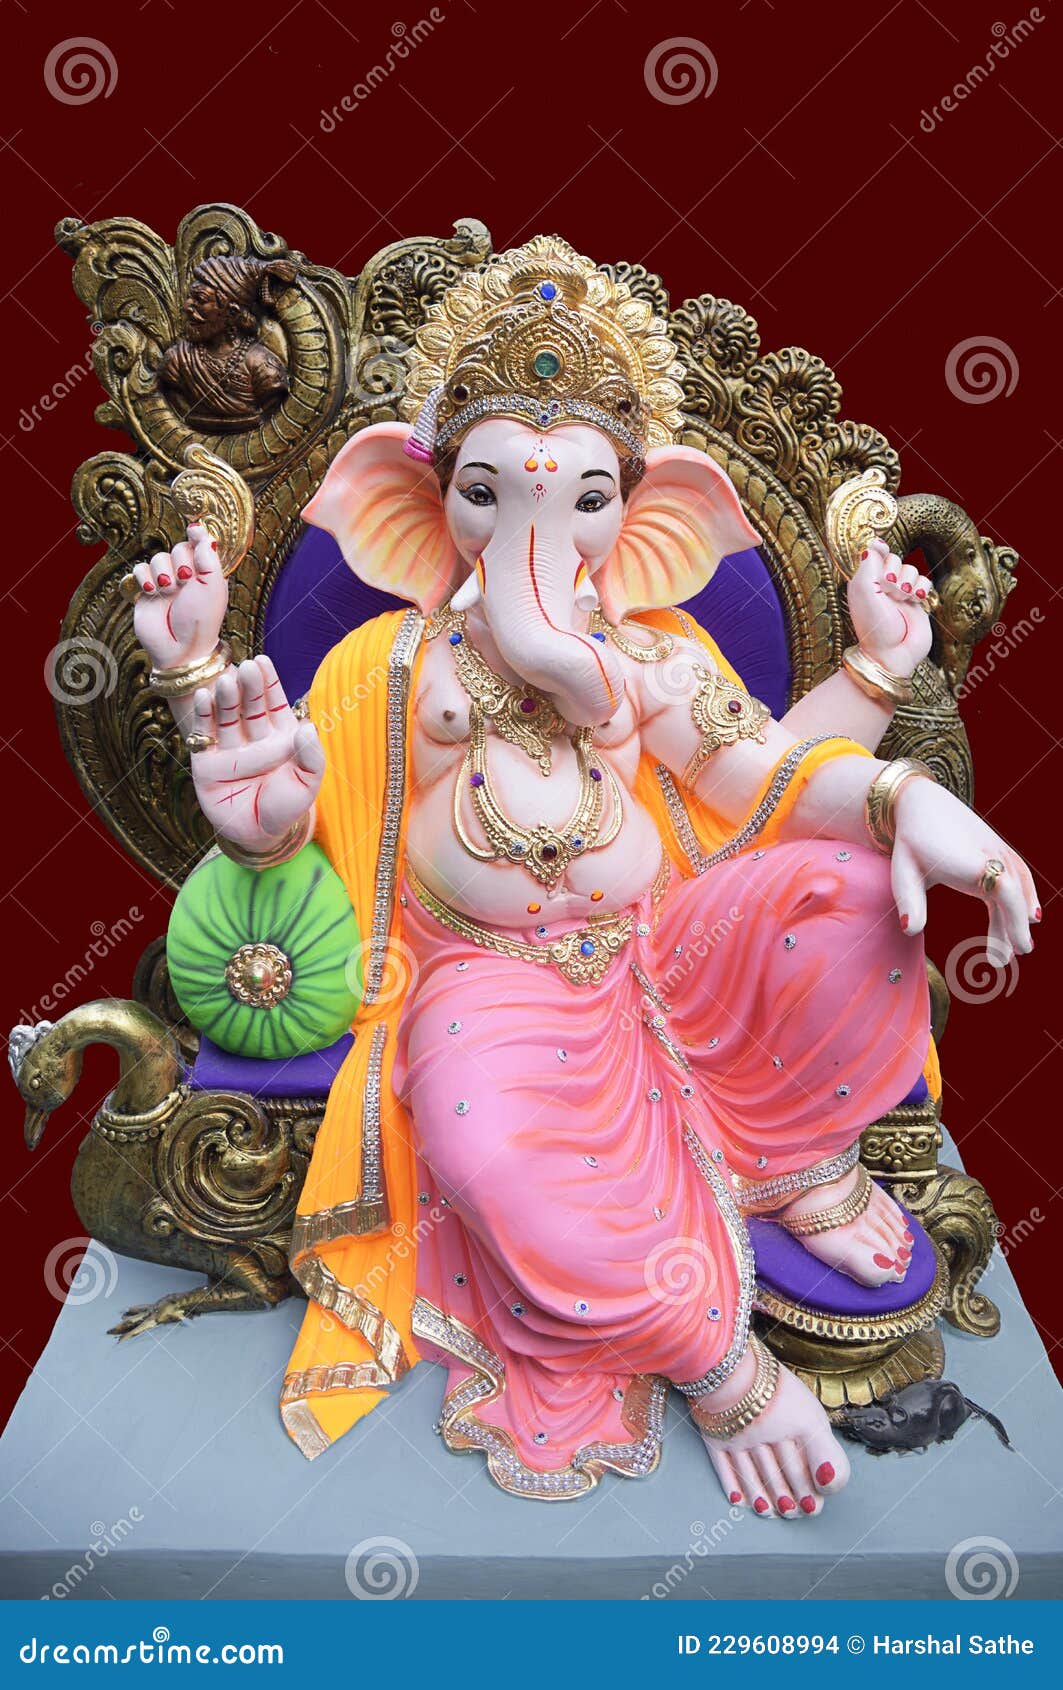 Beautiful and Colorful Hindu God Ganesha Idol Stock Photo - Image of ...